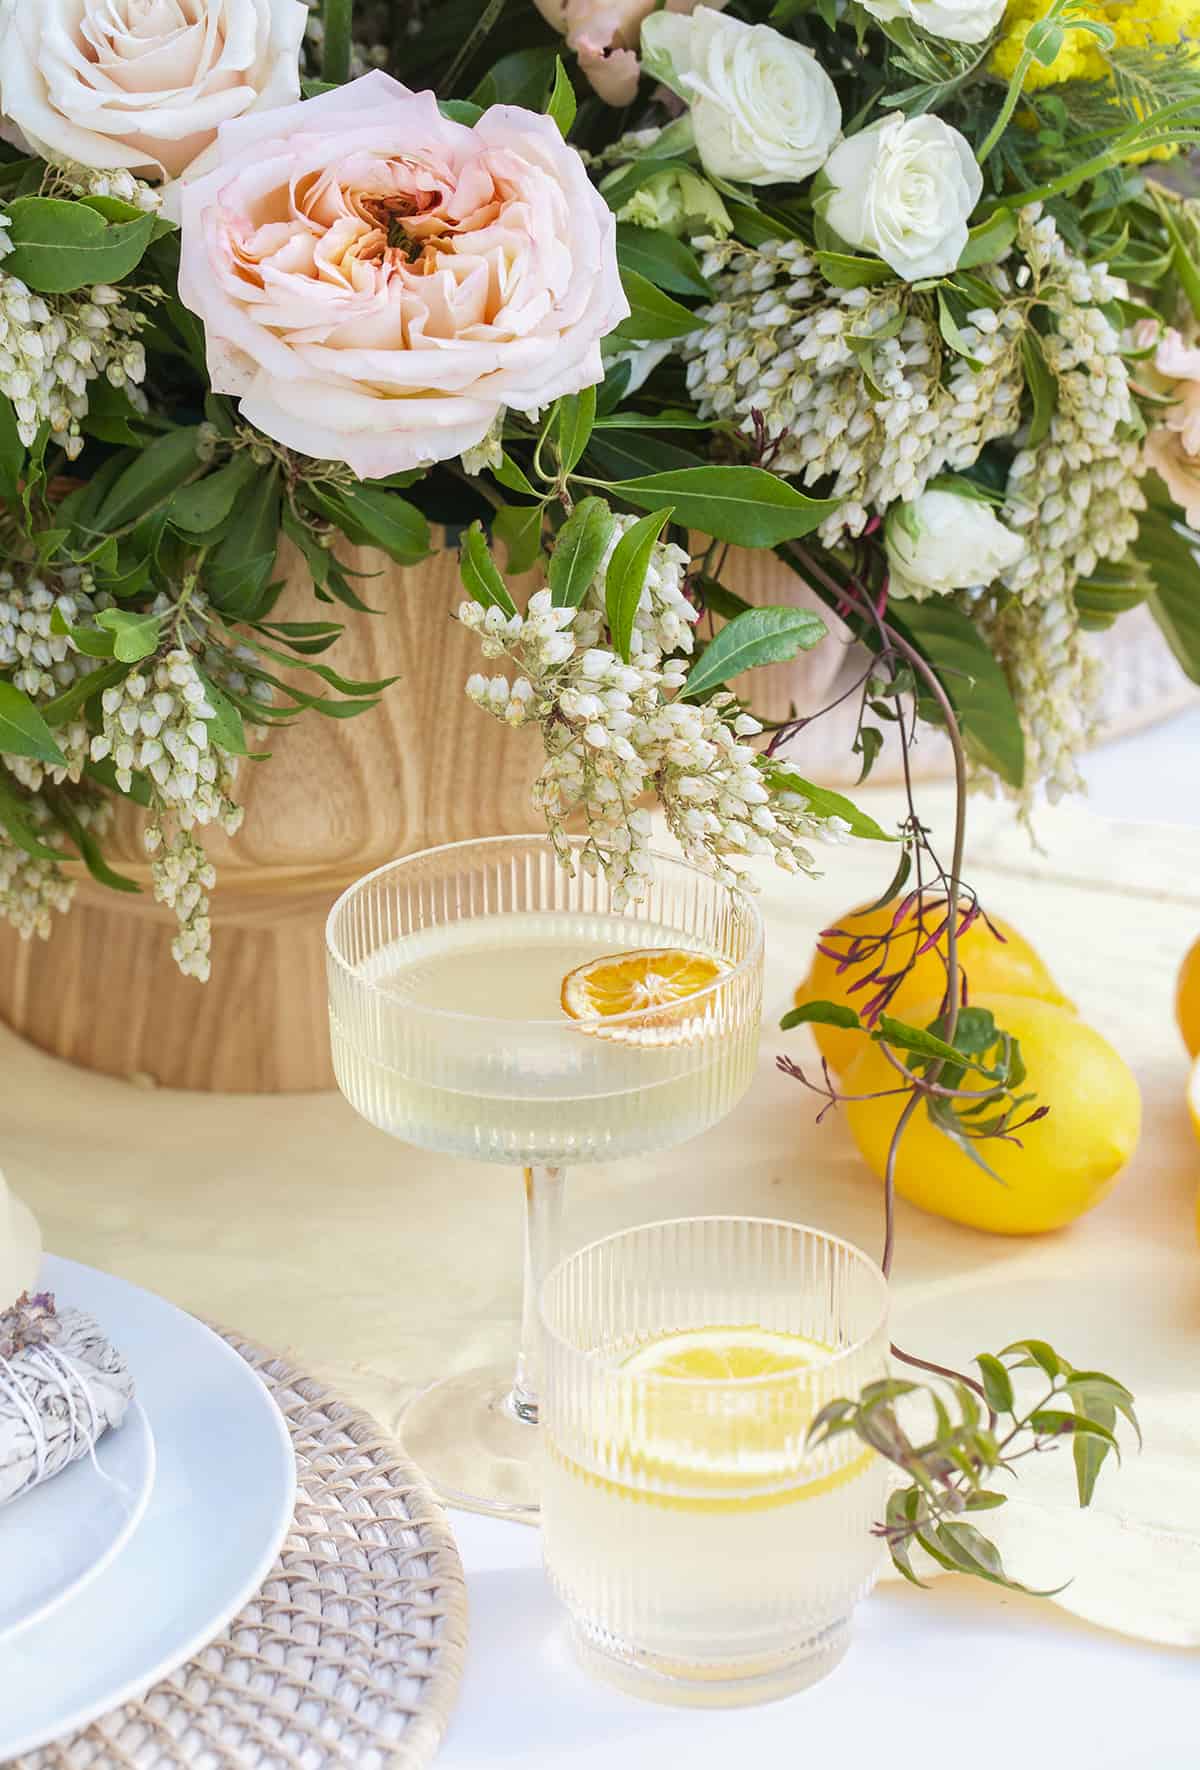 Lemon cocktail and lemon water.